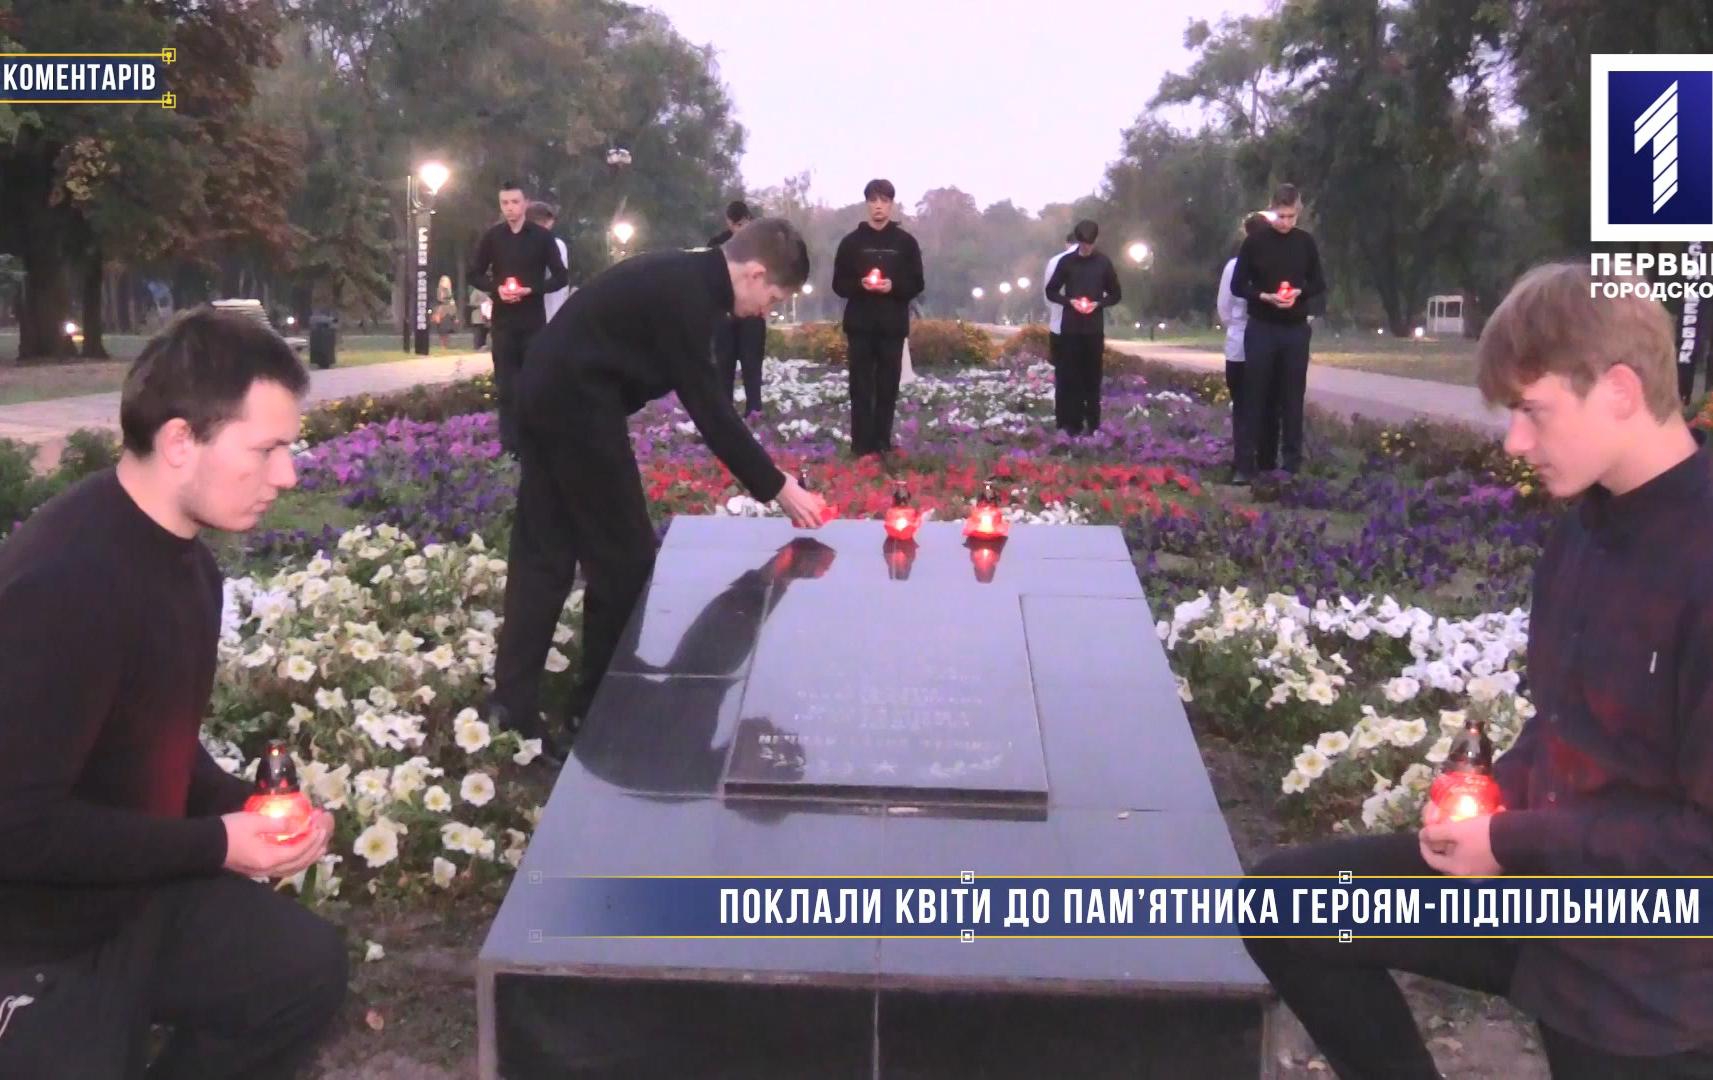 Без коментарів: поклали квіти до пам’ятника героям-підпільникам